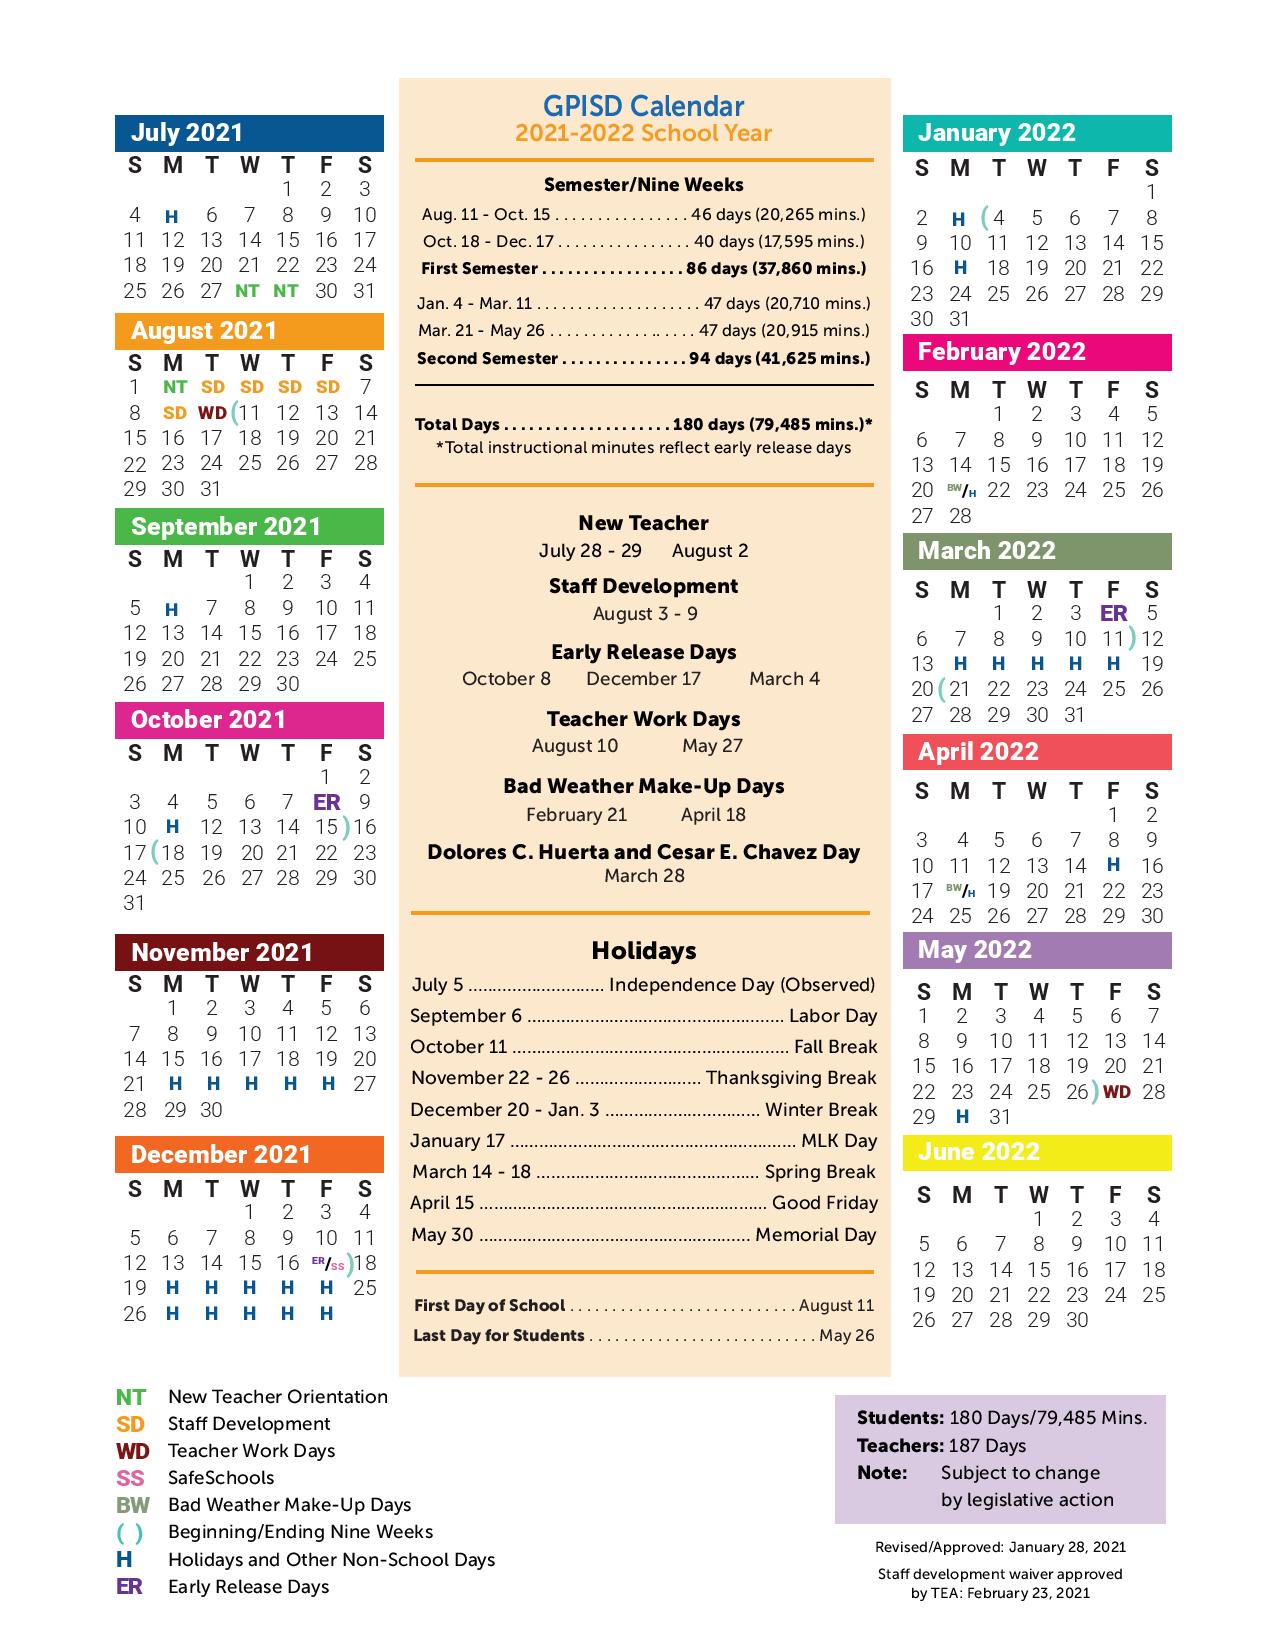 Disd 2022 Calendar Grand Prairie Independent School District Calendar 2021-2022